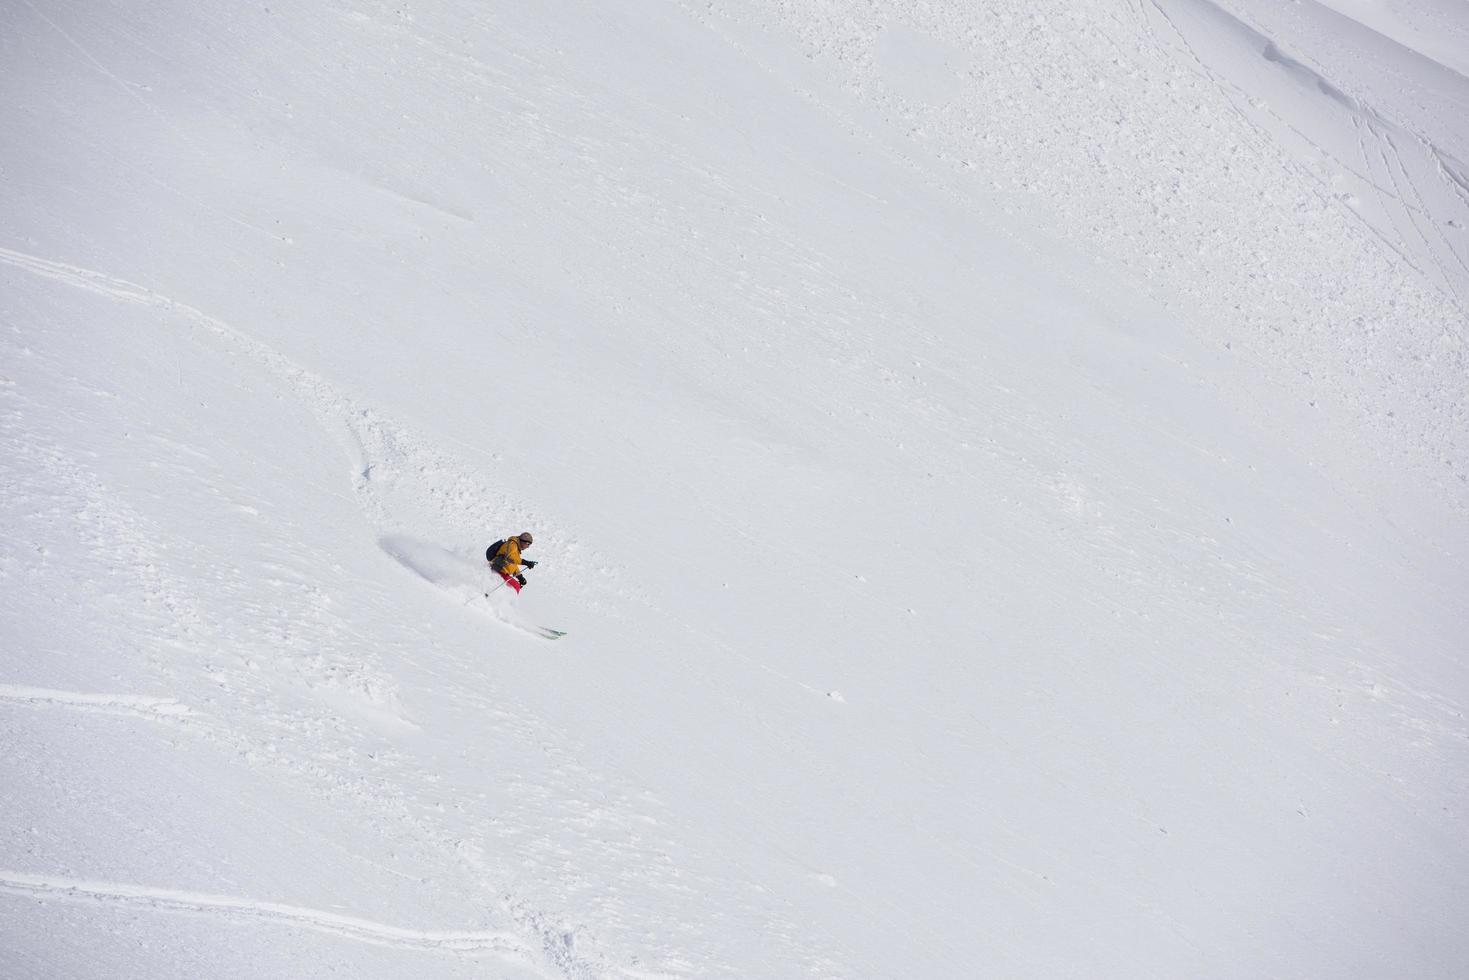 freeride skier skiing in deep powder snow photo